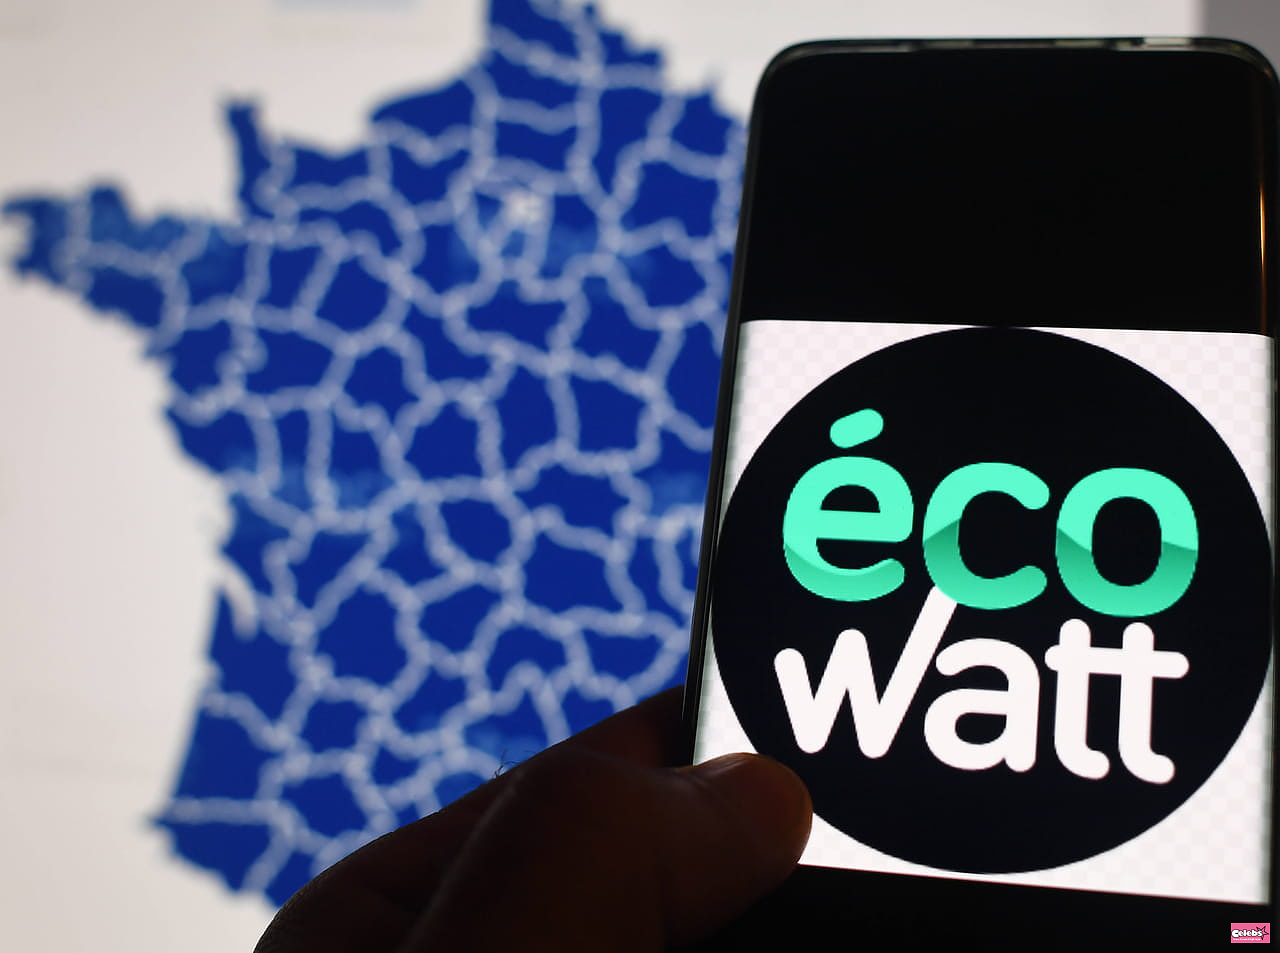 EcoWatt de l'eau: a site and an app, what for?